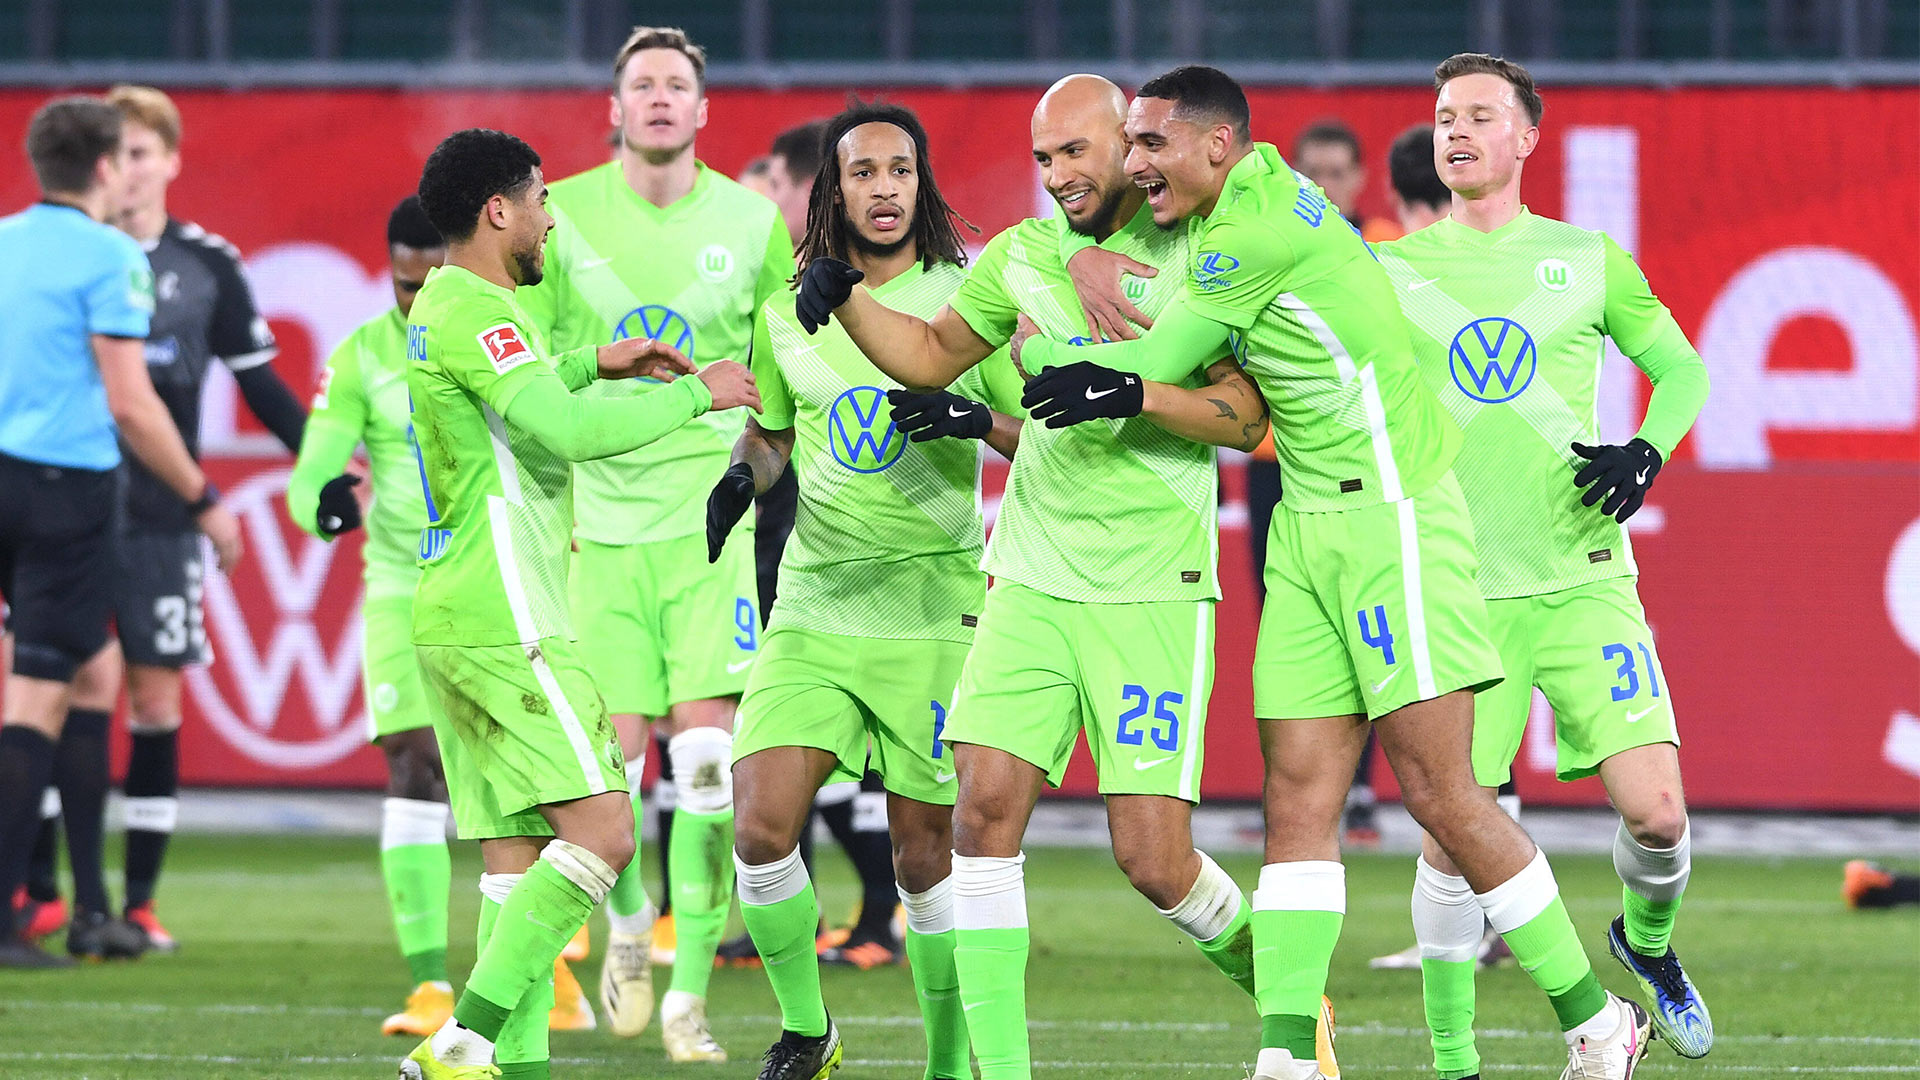 Die Wölfe rennen zusammen und jubeln gemeinsam über ihr Tor gegen SC Freiburg.